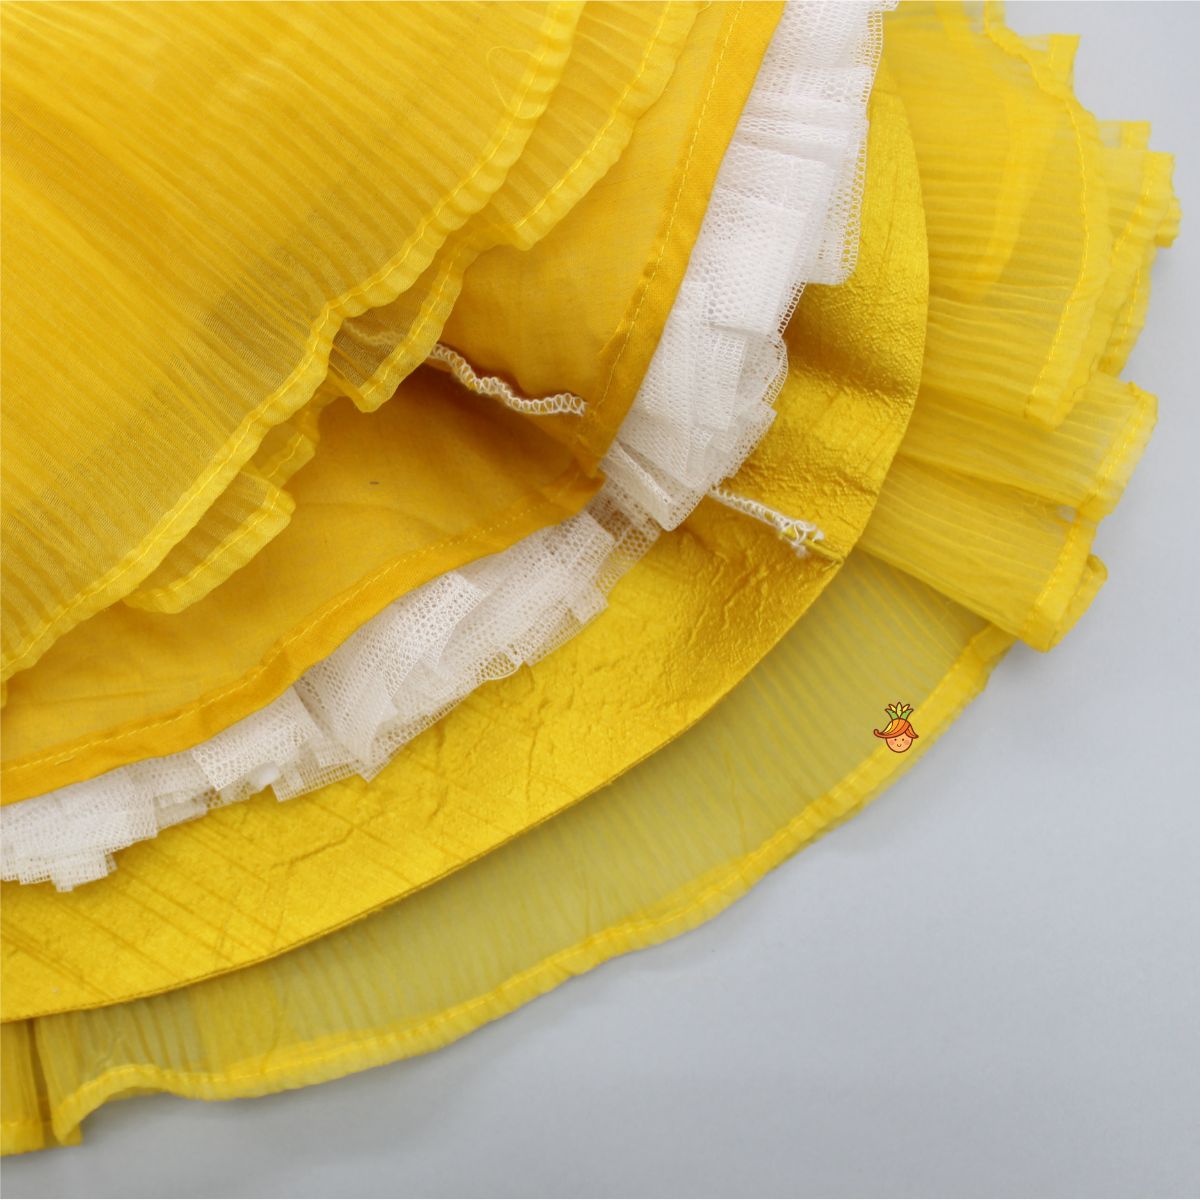 Pleated Yellow Fancy Dress